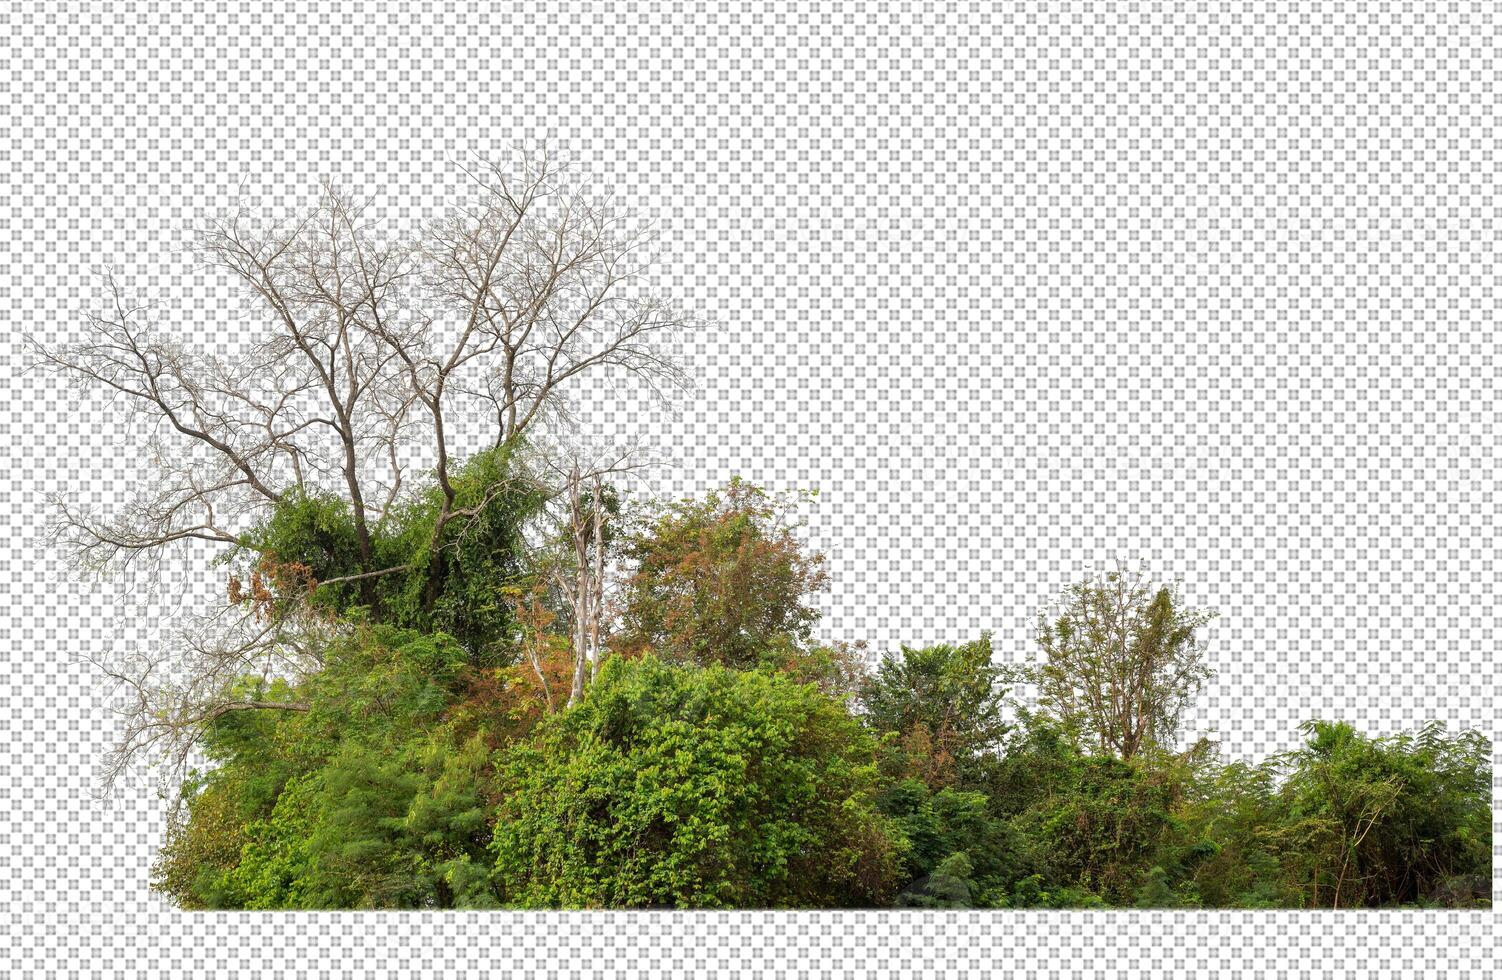 verde árvores isolado em transparente fundo floresta e verão folhagem para ambos impressão e rede com cortar caminho e alfa canal foto